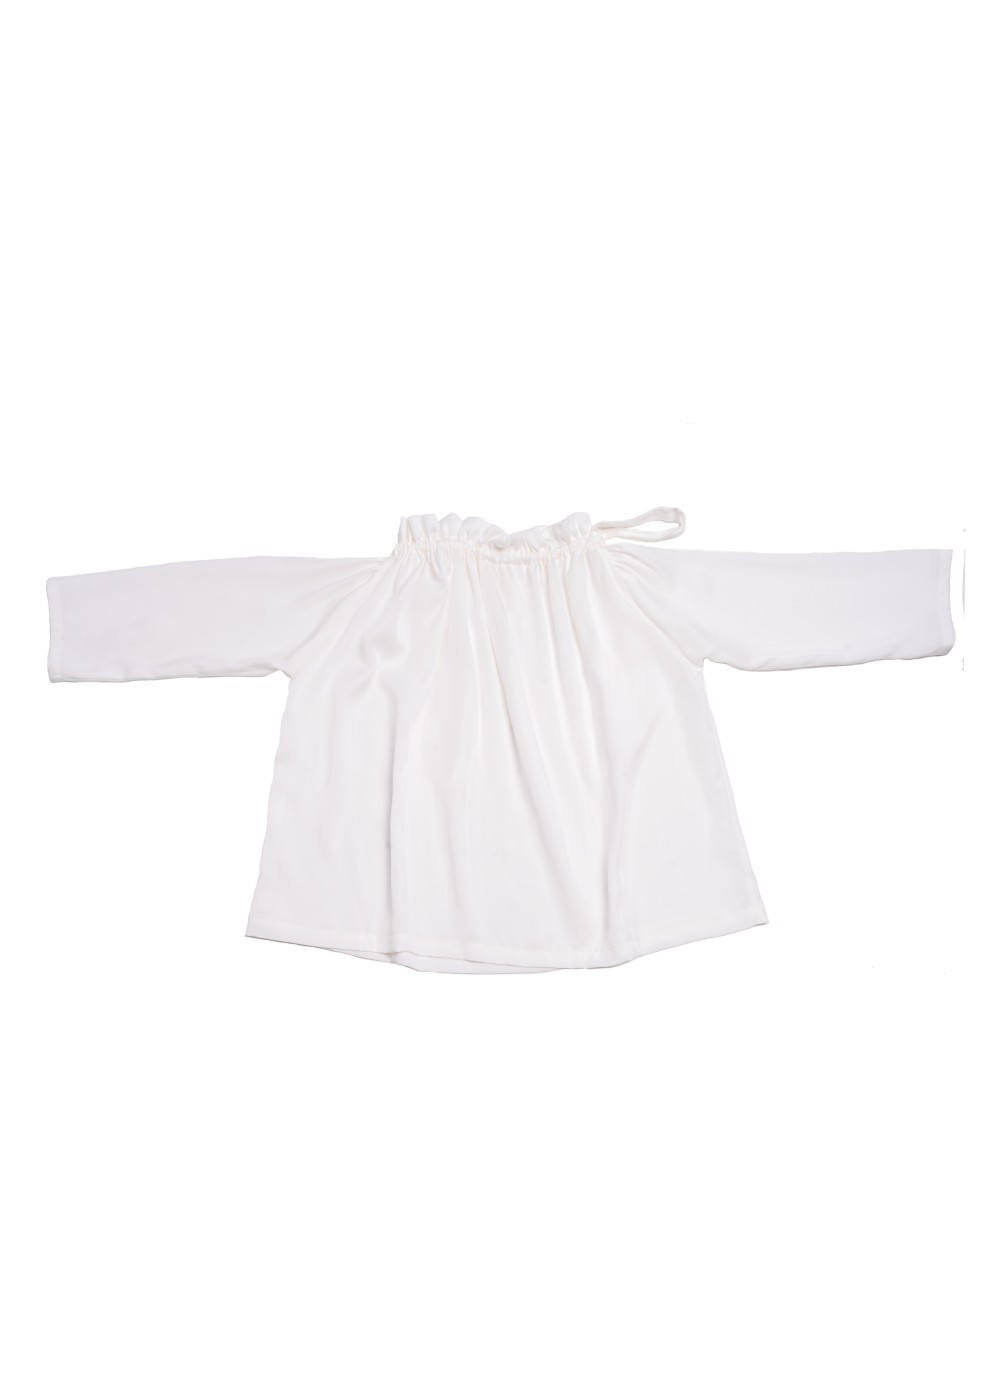 Langarm-Bluse Lea, Off-White, Oversized